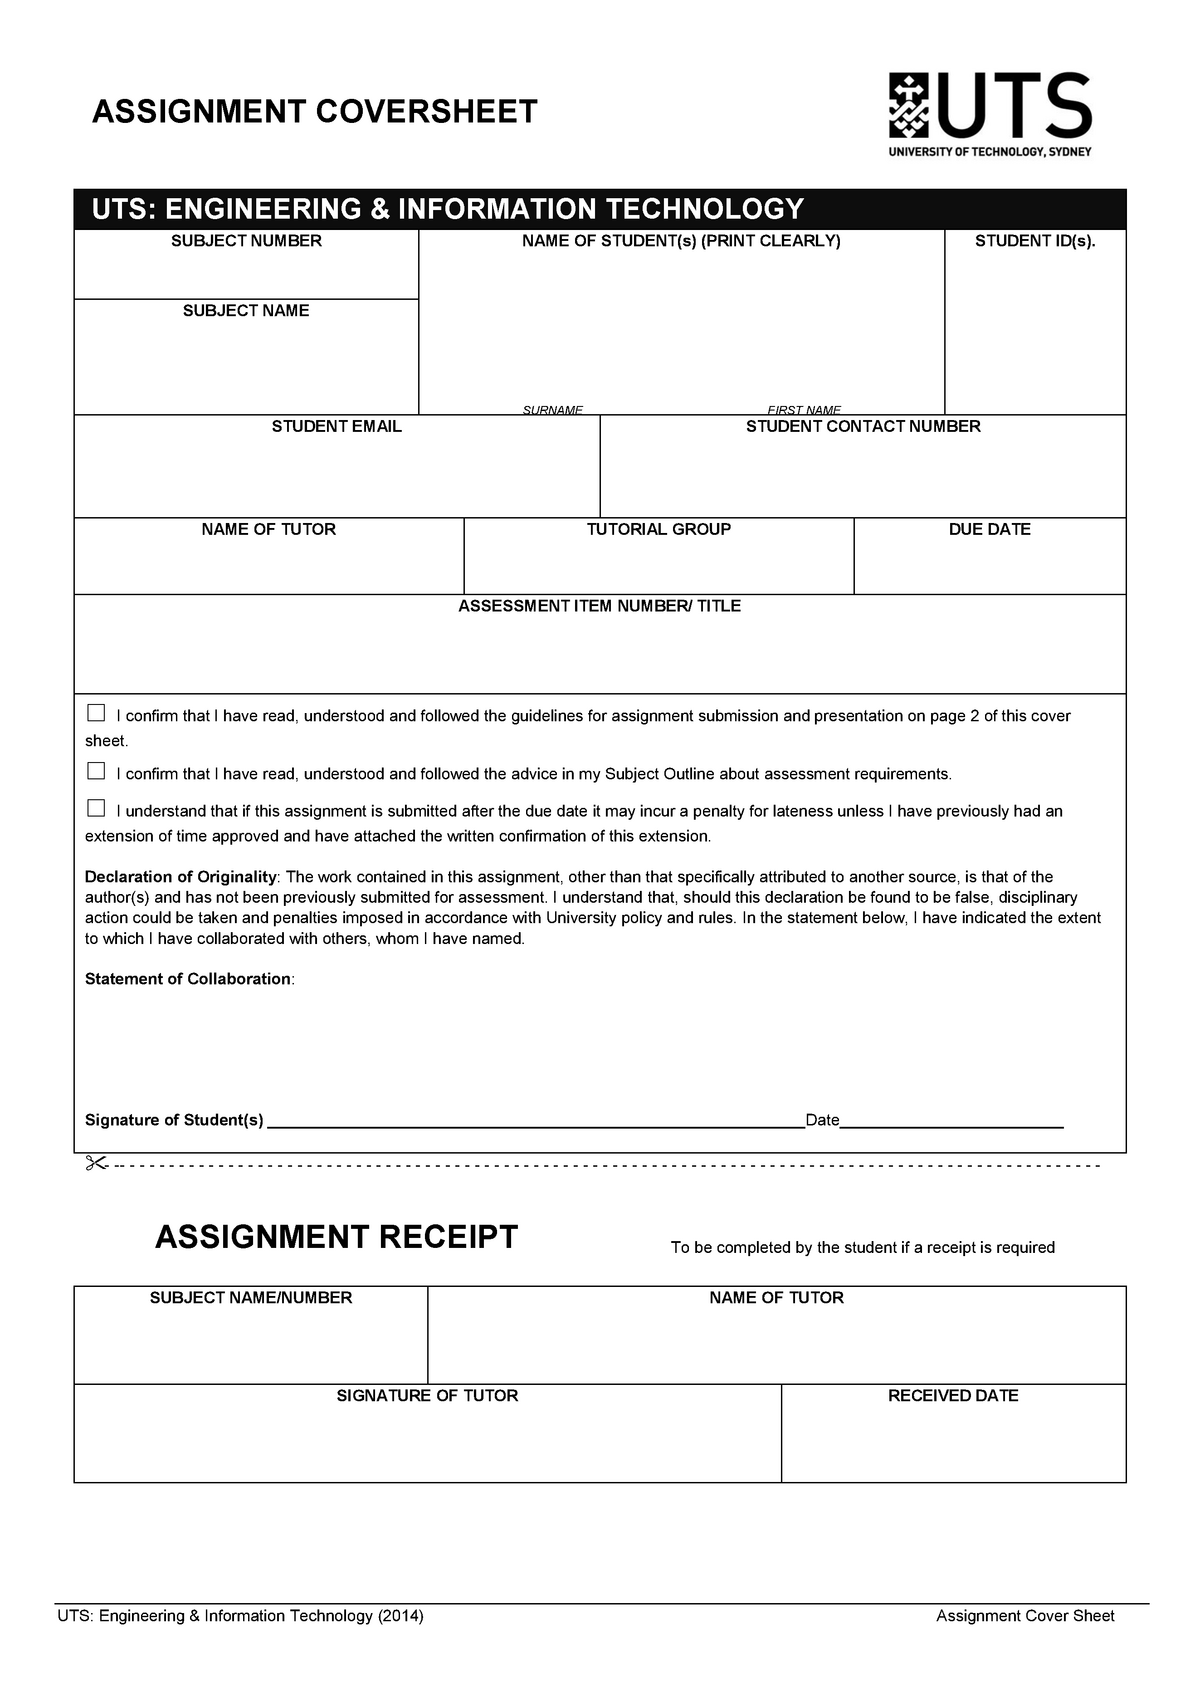 feit assignment cover sheet